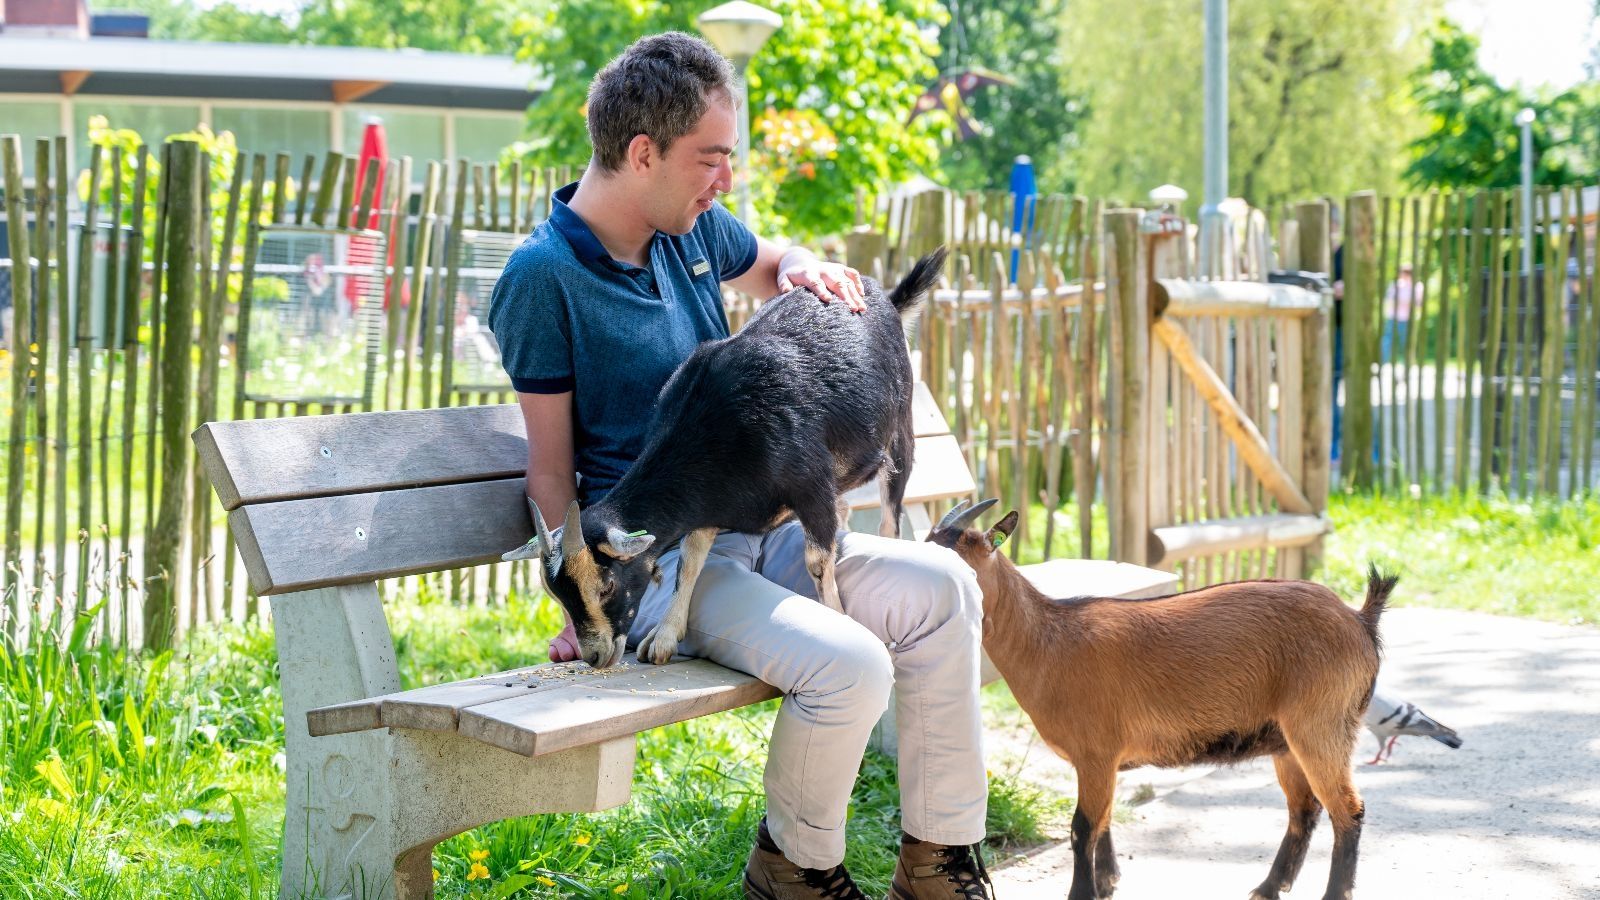 Cliënt met geiten bij dierenpark De Driespan in Schiedam